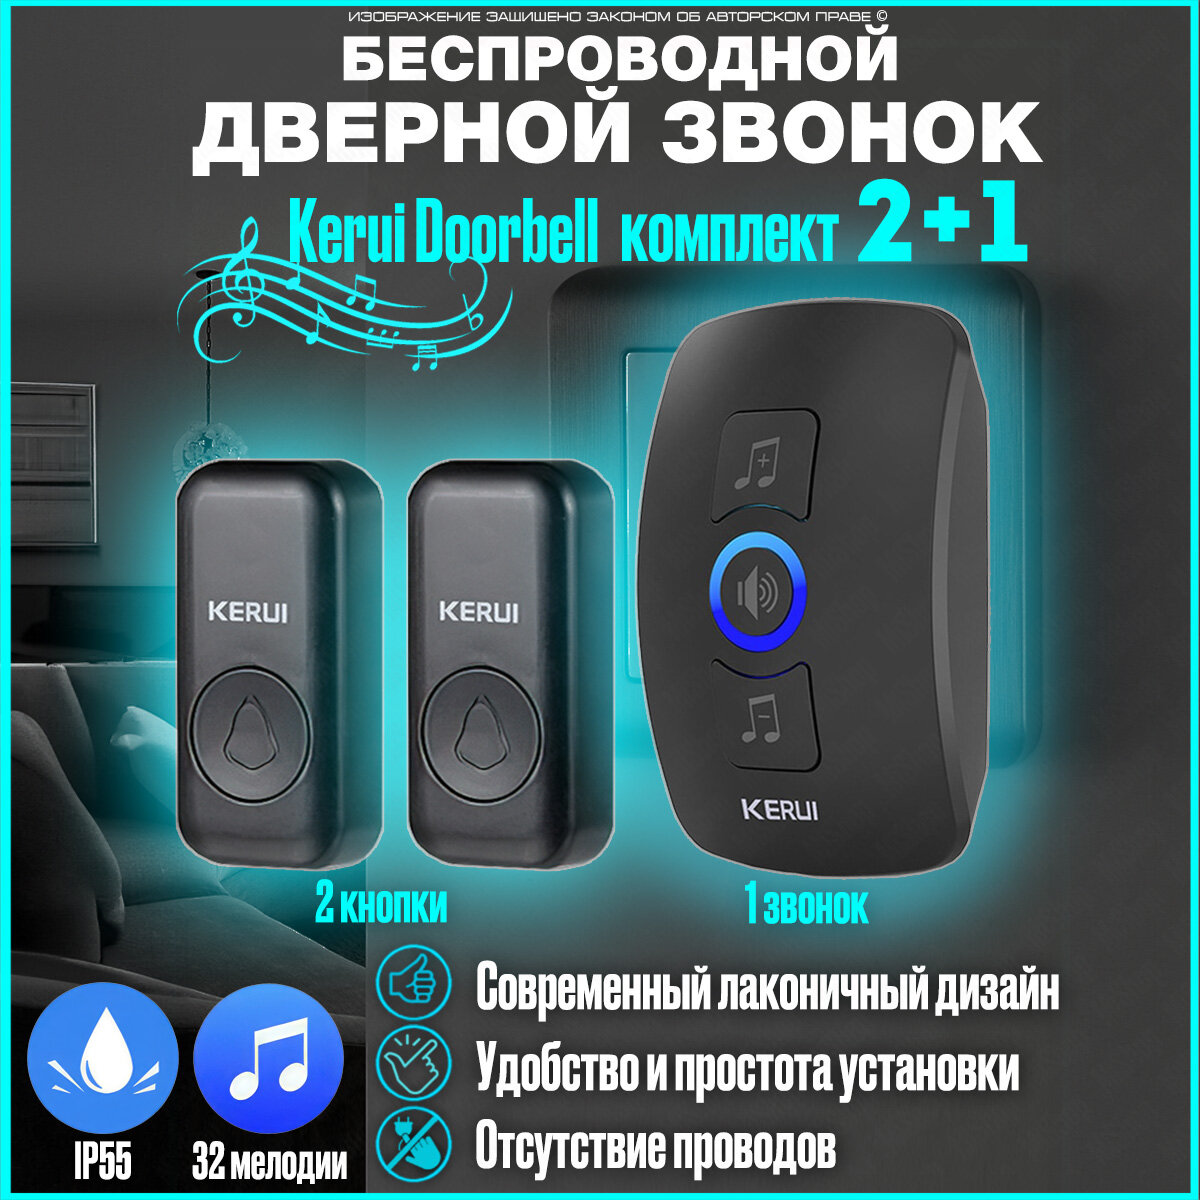 Беспроводной дверной звонок влагощащенная кнопка вызова комплект электронного звонка на 2 кнопки Kerui Doorbell Duo Black